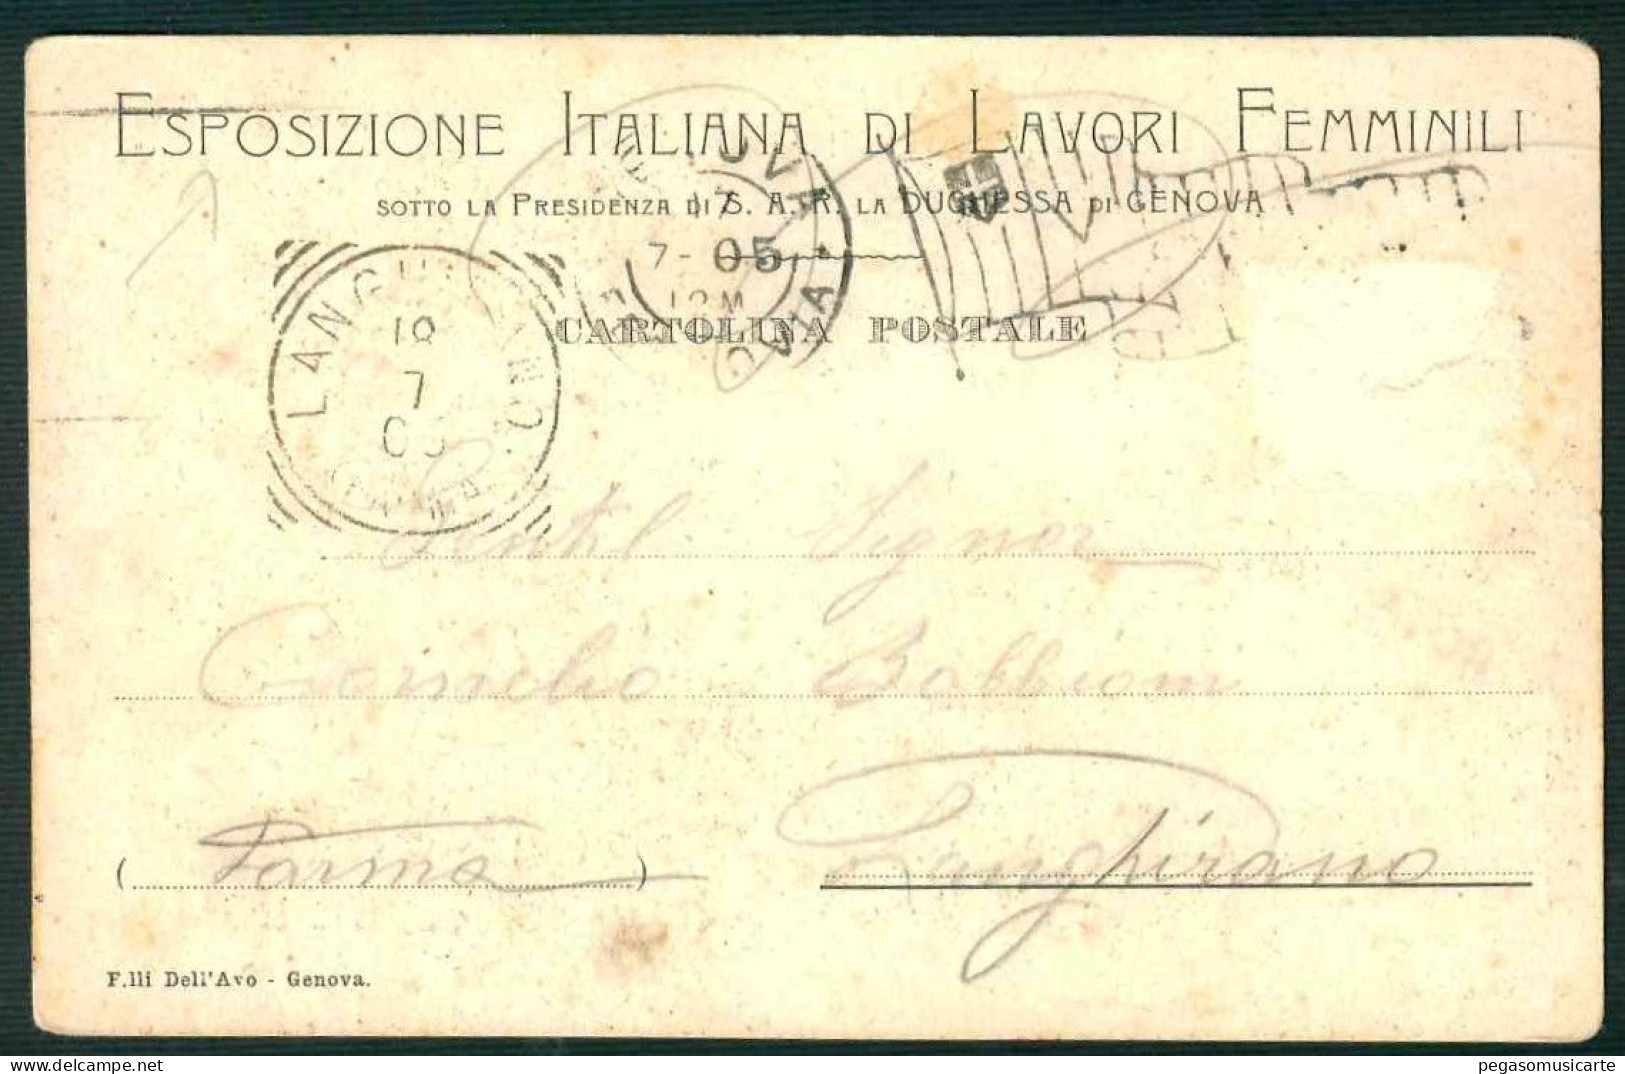 BF112 ESPOSIZIONE ITALIANA DI LAVORI FEMMINILI SOTTO LA PRESIDENZA DI S.A.R.DUCHESSA DI GENOVA 1905 - Patriottisch